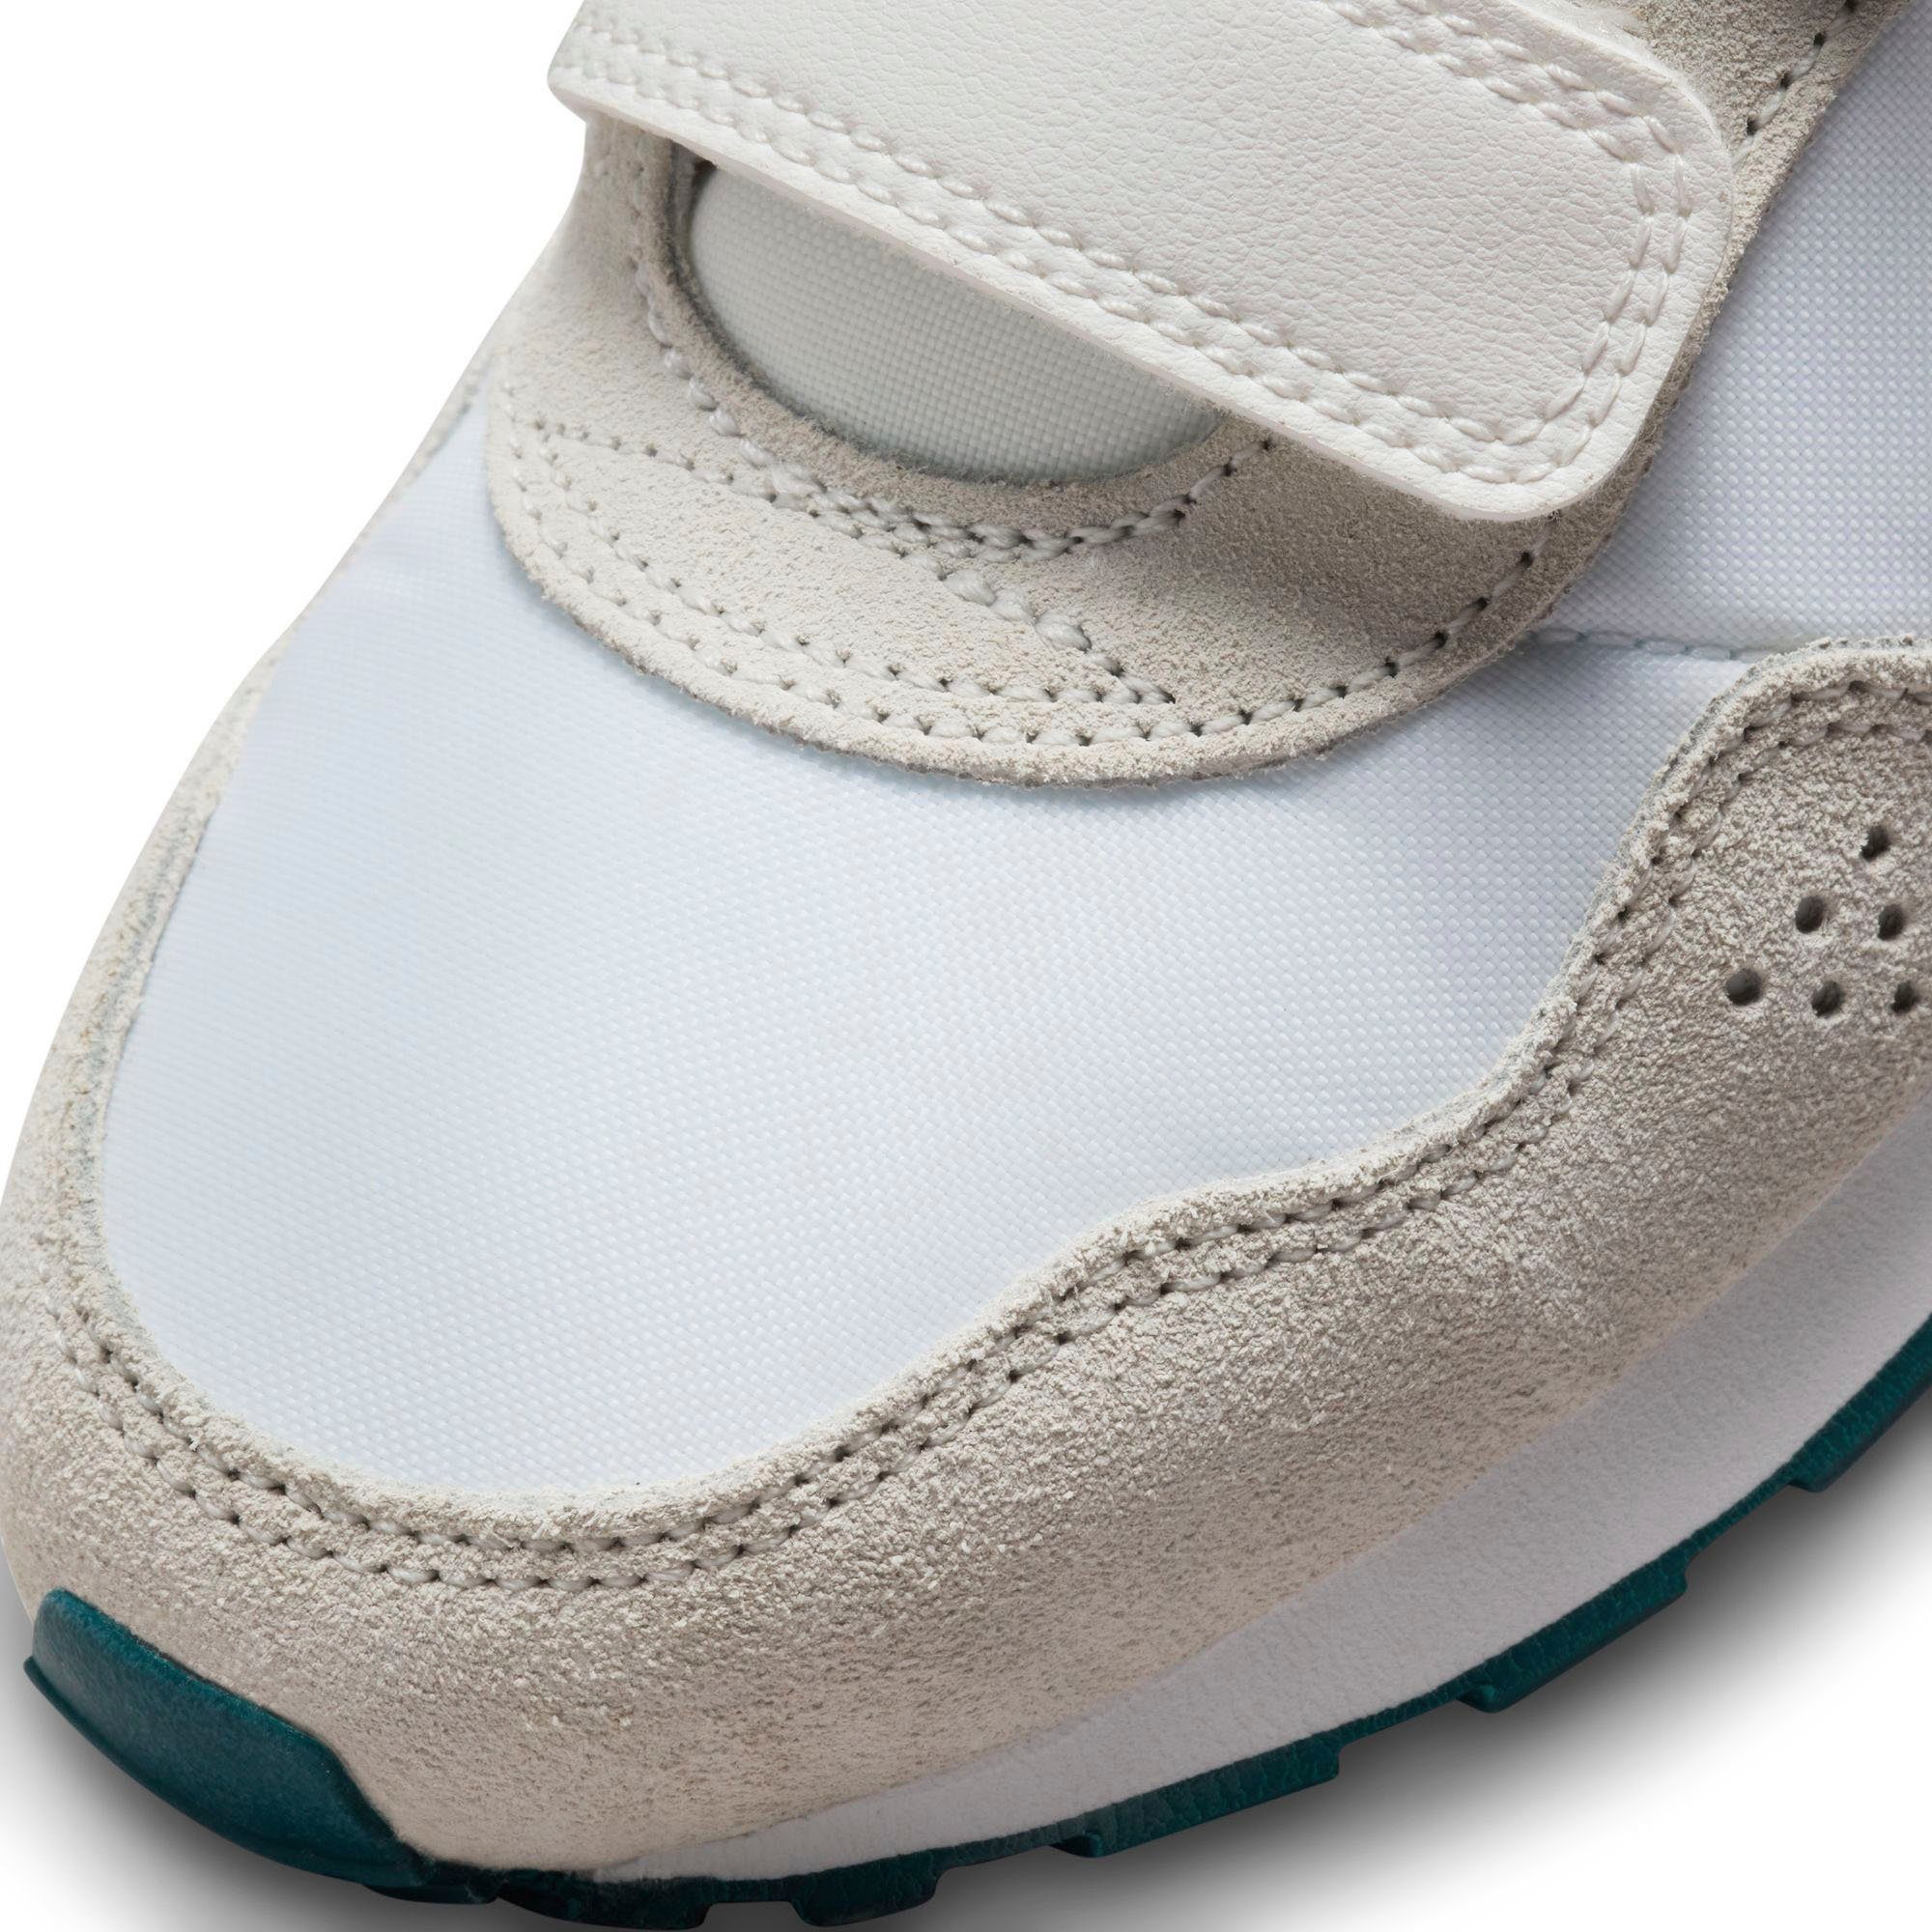 Nike Sportswear Sneaker white (PS) MD VALIANT mit summit Klettverschluss